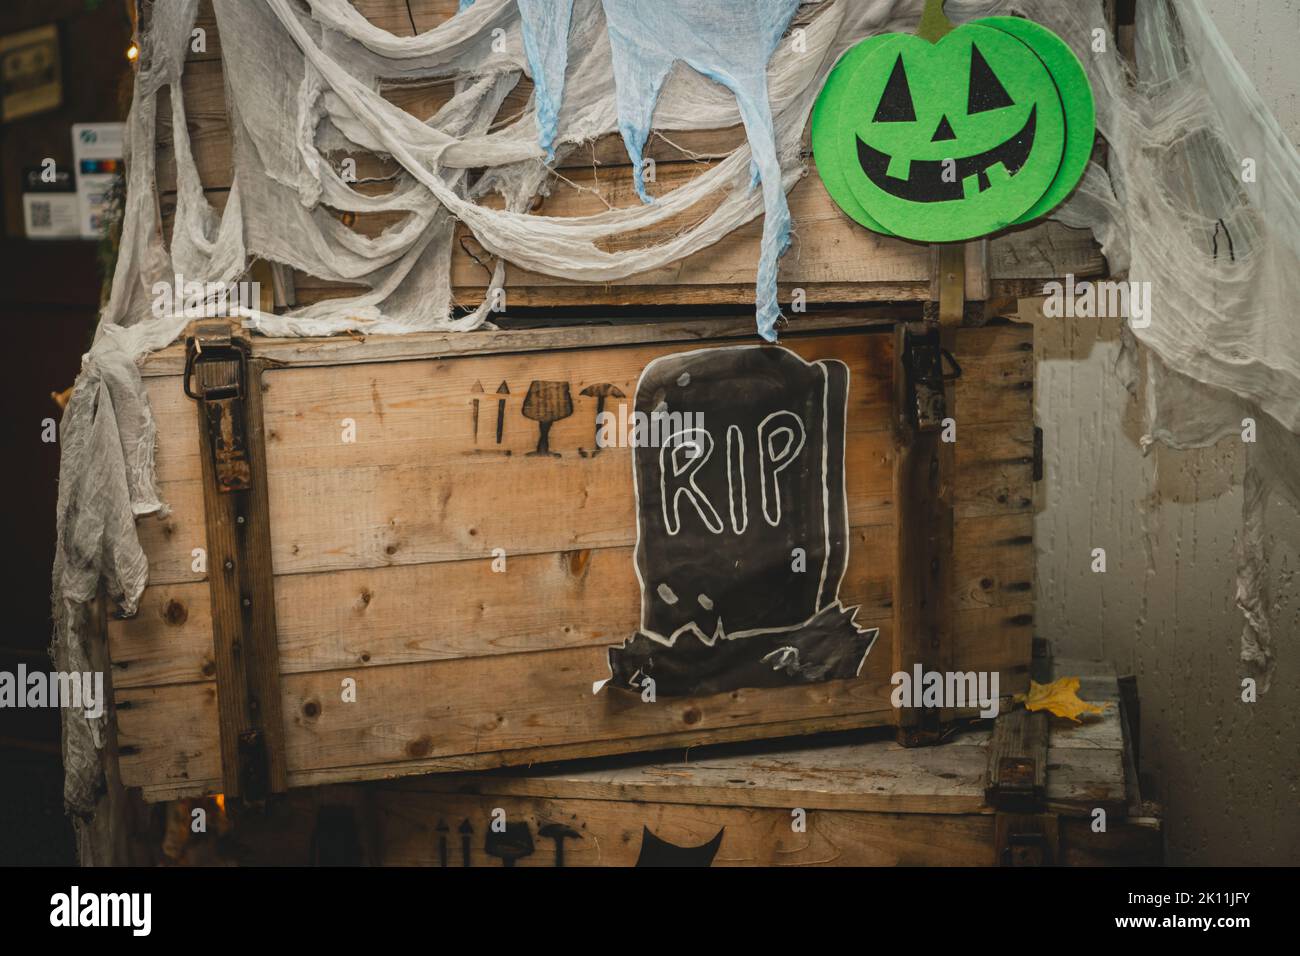 Verde zucca di Halloween brillante con naso, bocca e occhi dipinti su scatola di legno con garza come rete e lapide con iscrizione RIP. Immagini fatte a mano Foto Stock